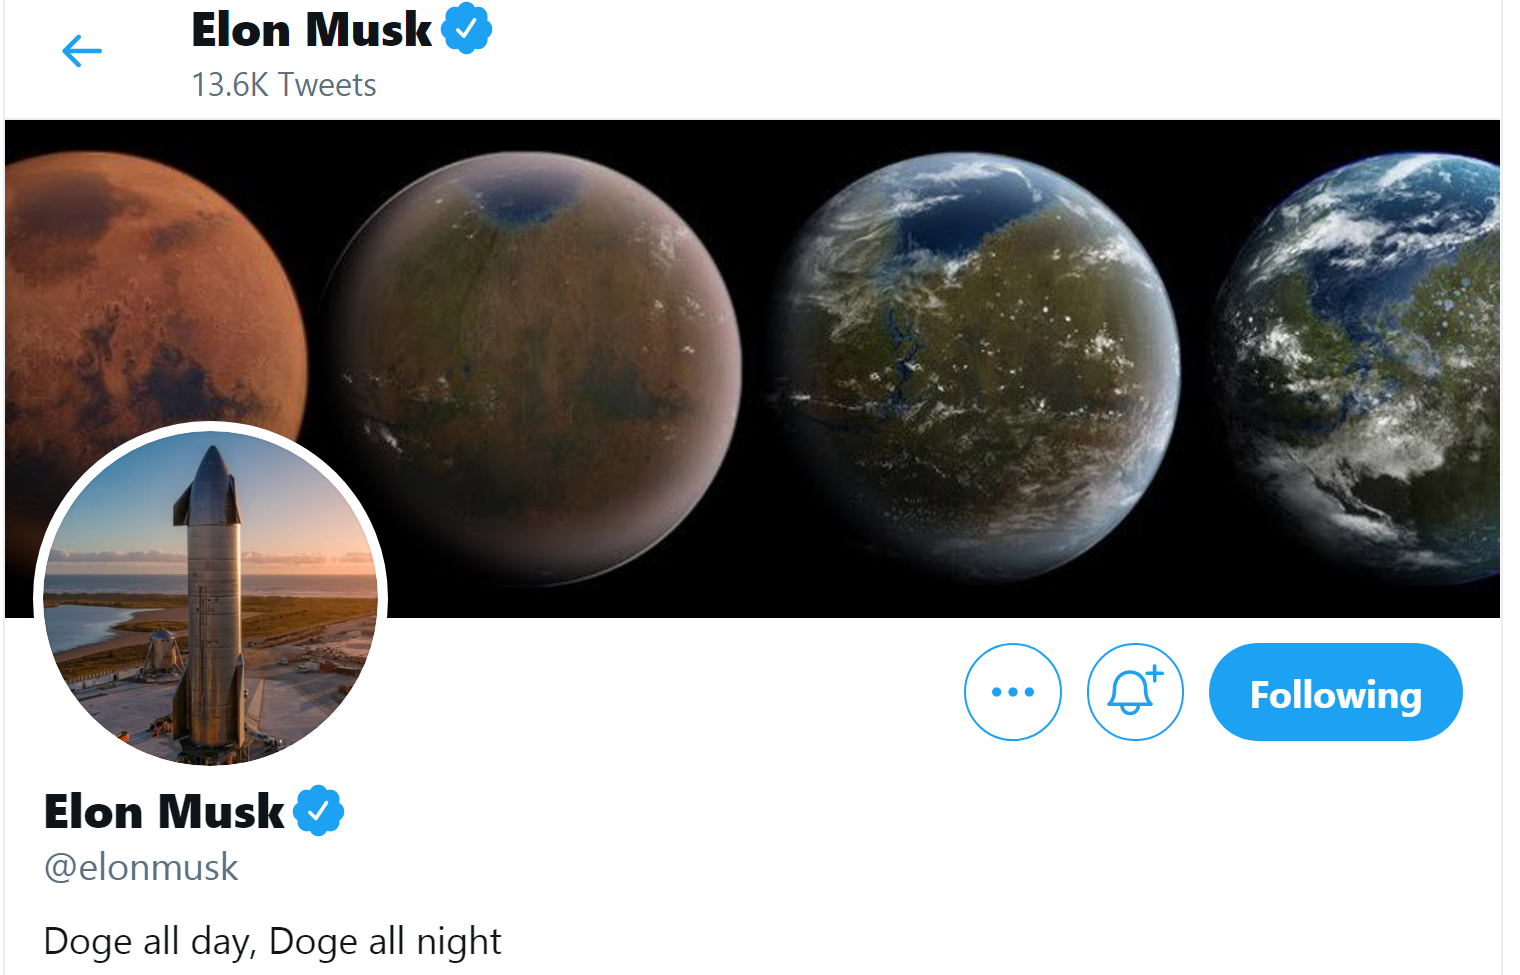 Elon-Musk-elonmusk-Twitter.png